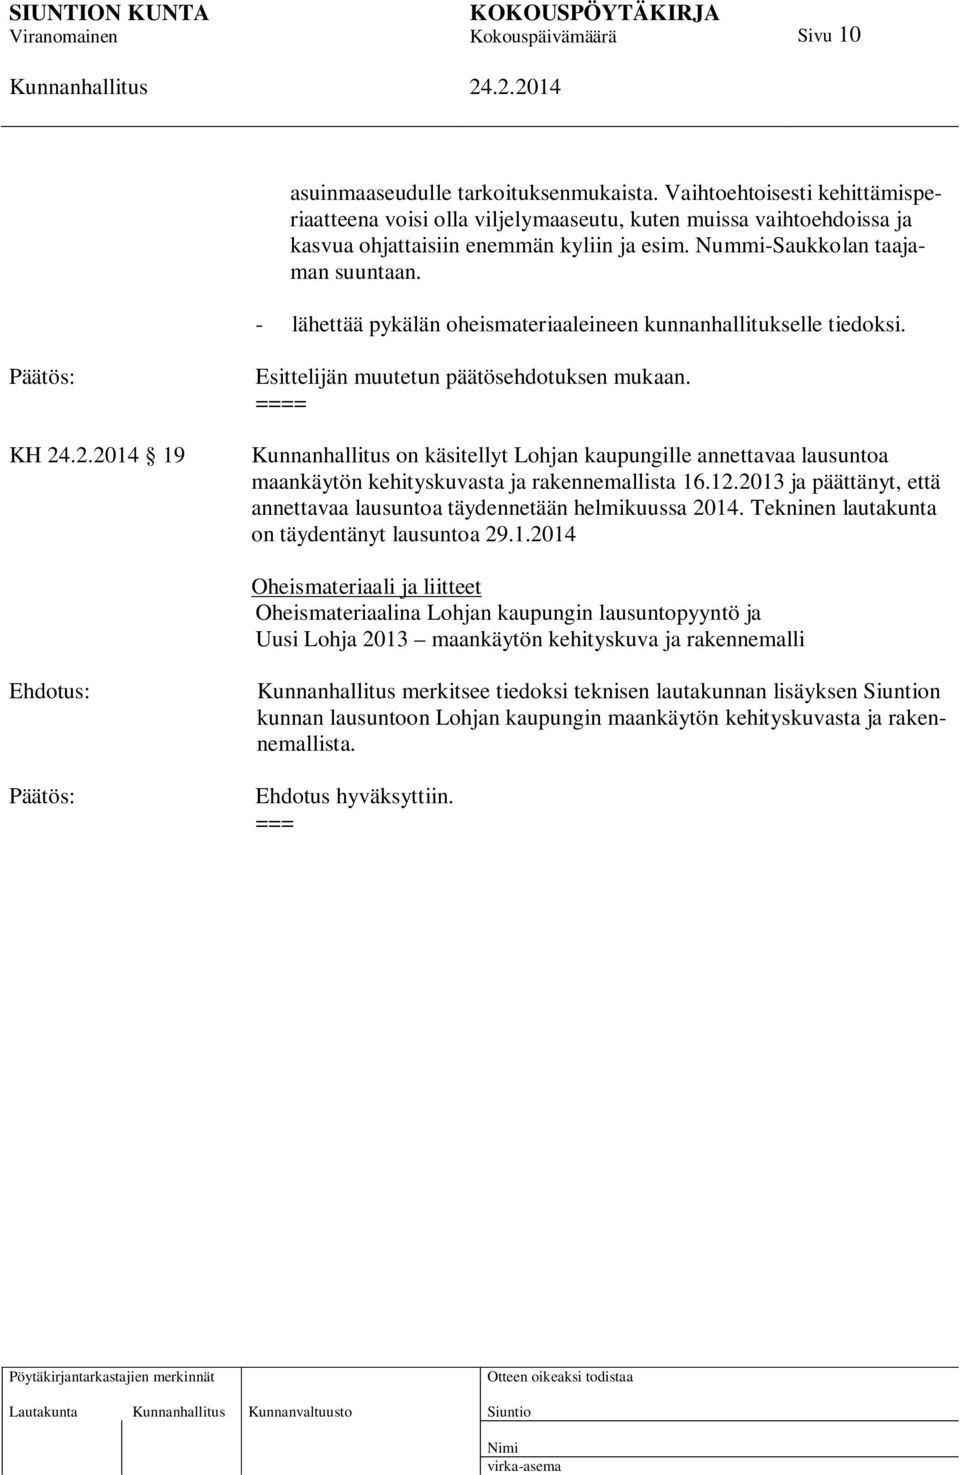 = on käsitellyt Lohjan kaupungille annettavaa lausuntoa maankäytön kehityskuvasta ja rakennemallista 16.12.2013 ja päättänyt, että annettavaa lausuntoa täydennetään helmikuussa 2014.